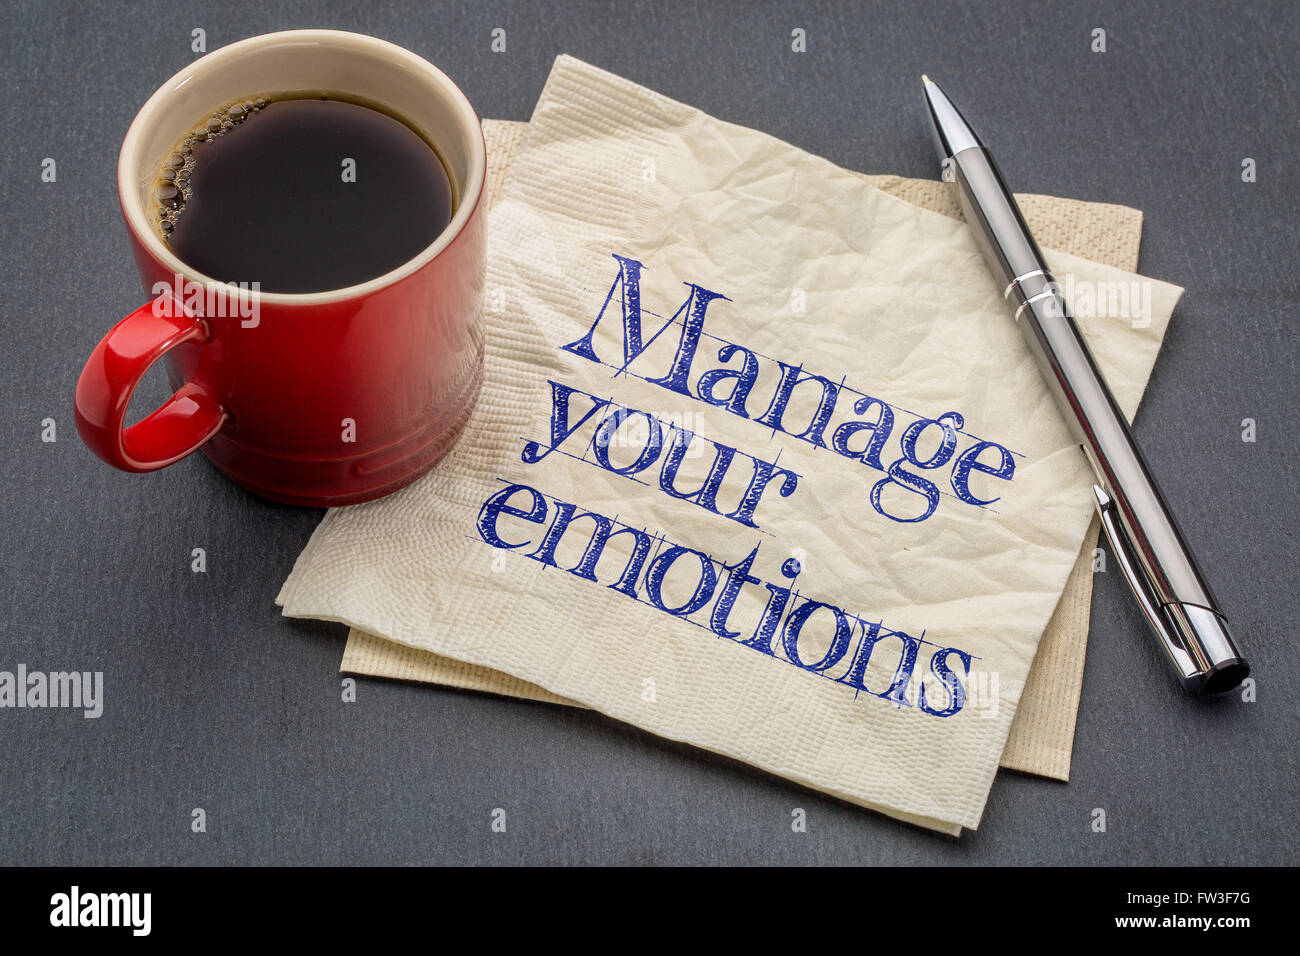 Verwalten Sie Ihre Emotionen Beratung oder Erinnerung - Handschrift auf einer Serviette mit Tasse Kaffee vor grauen Schiefer Stein Hintergrund Stockfoto